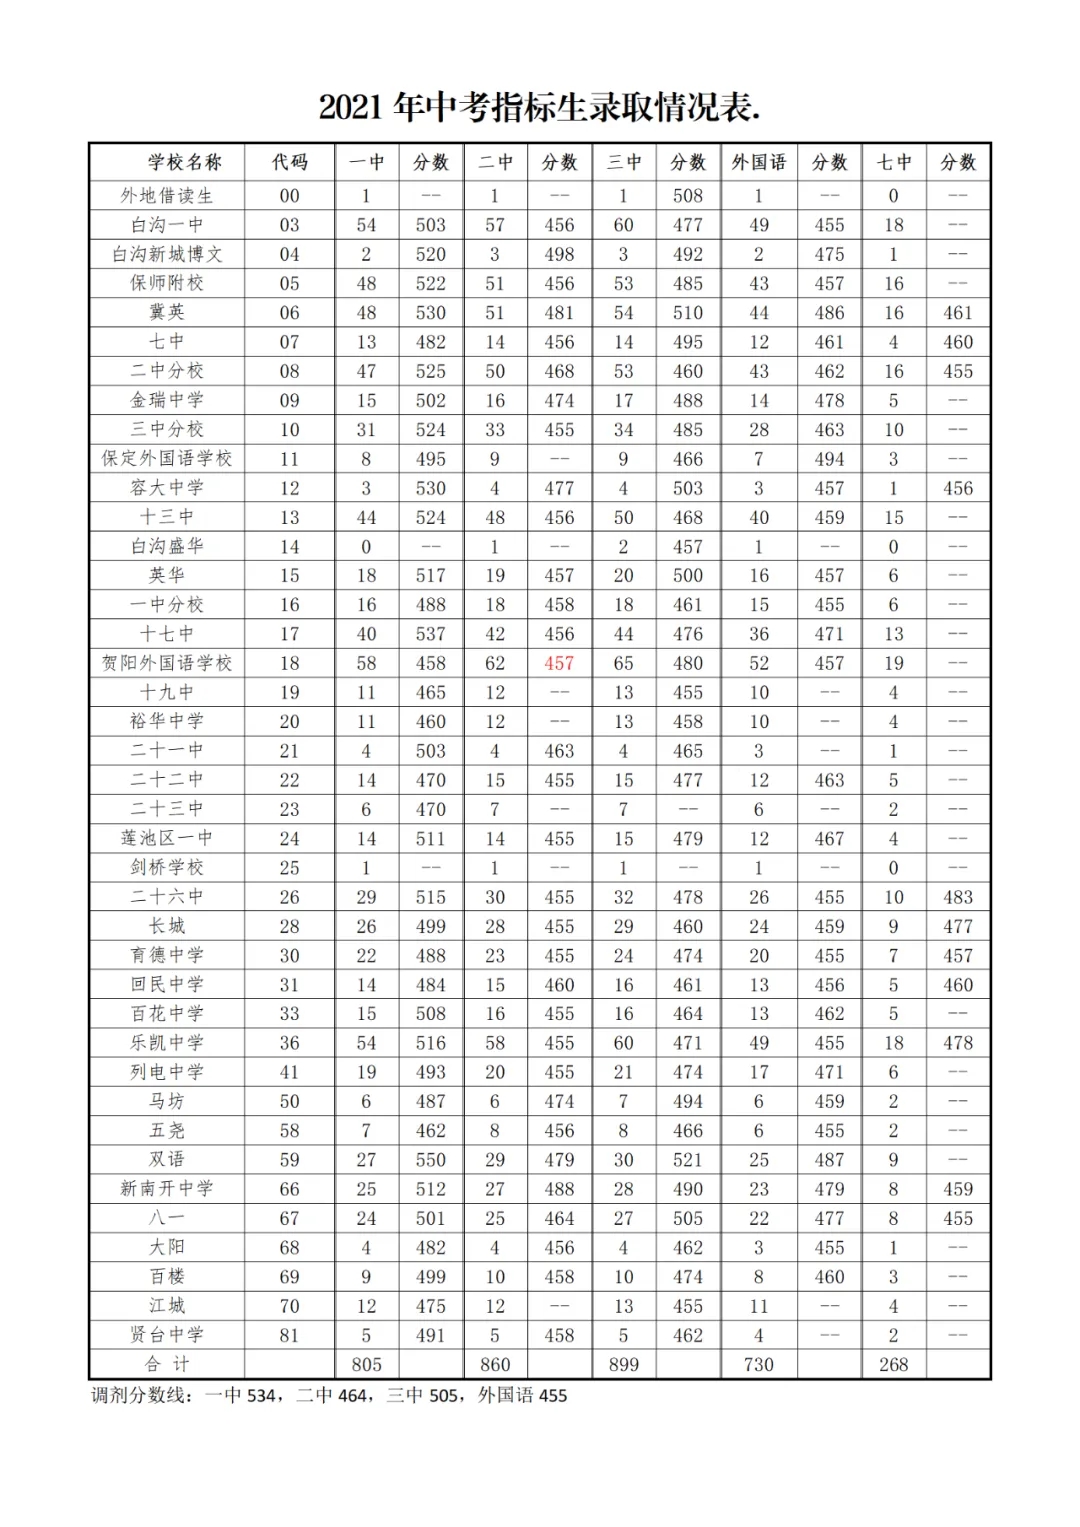 
2018广州体育大学体育单招考试成绩查询入口，成绩查询时间